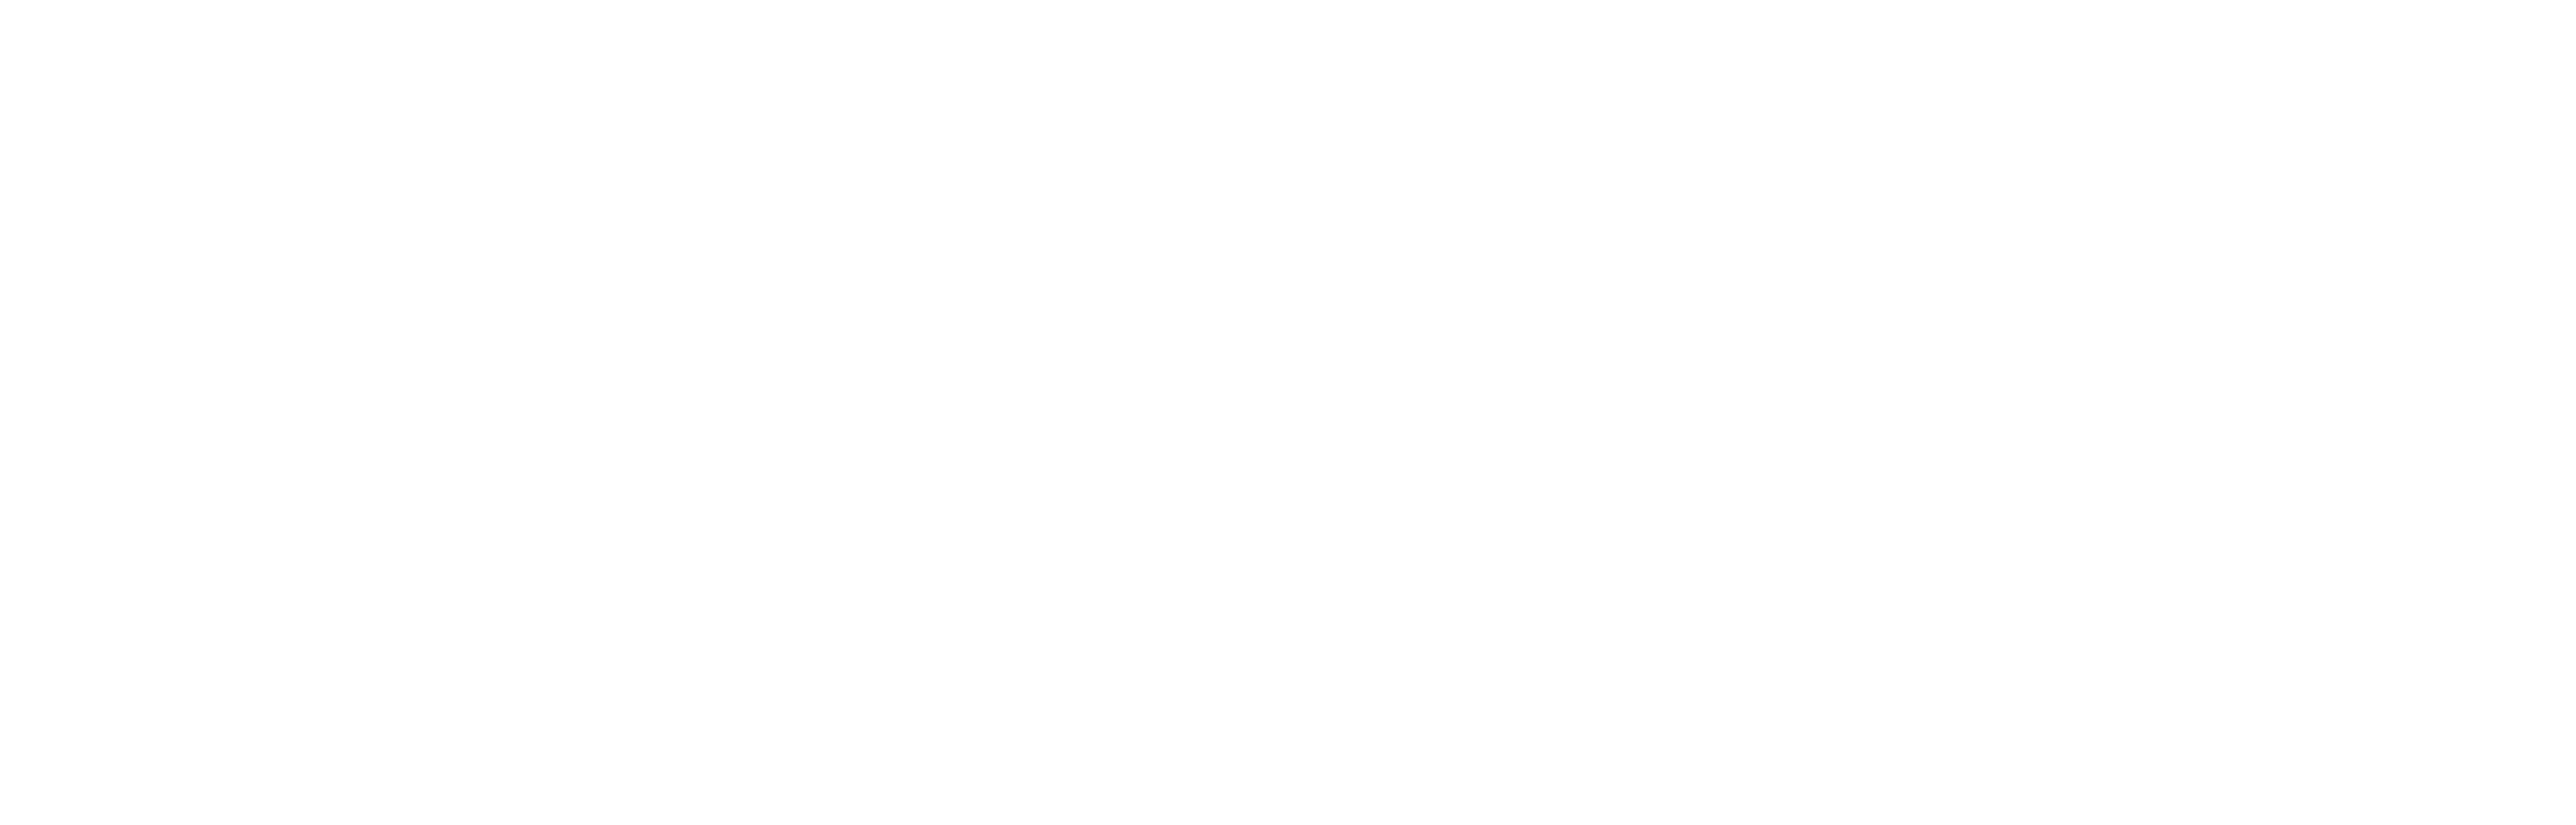 Alumni & Friends Magazine Logo